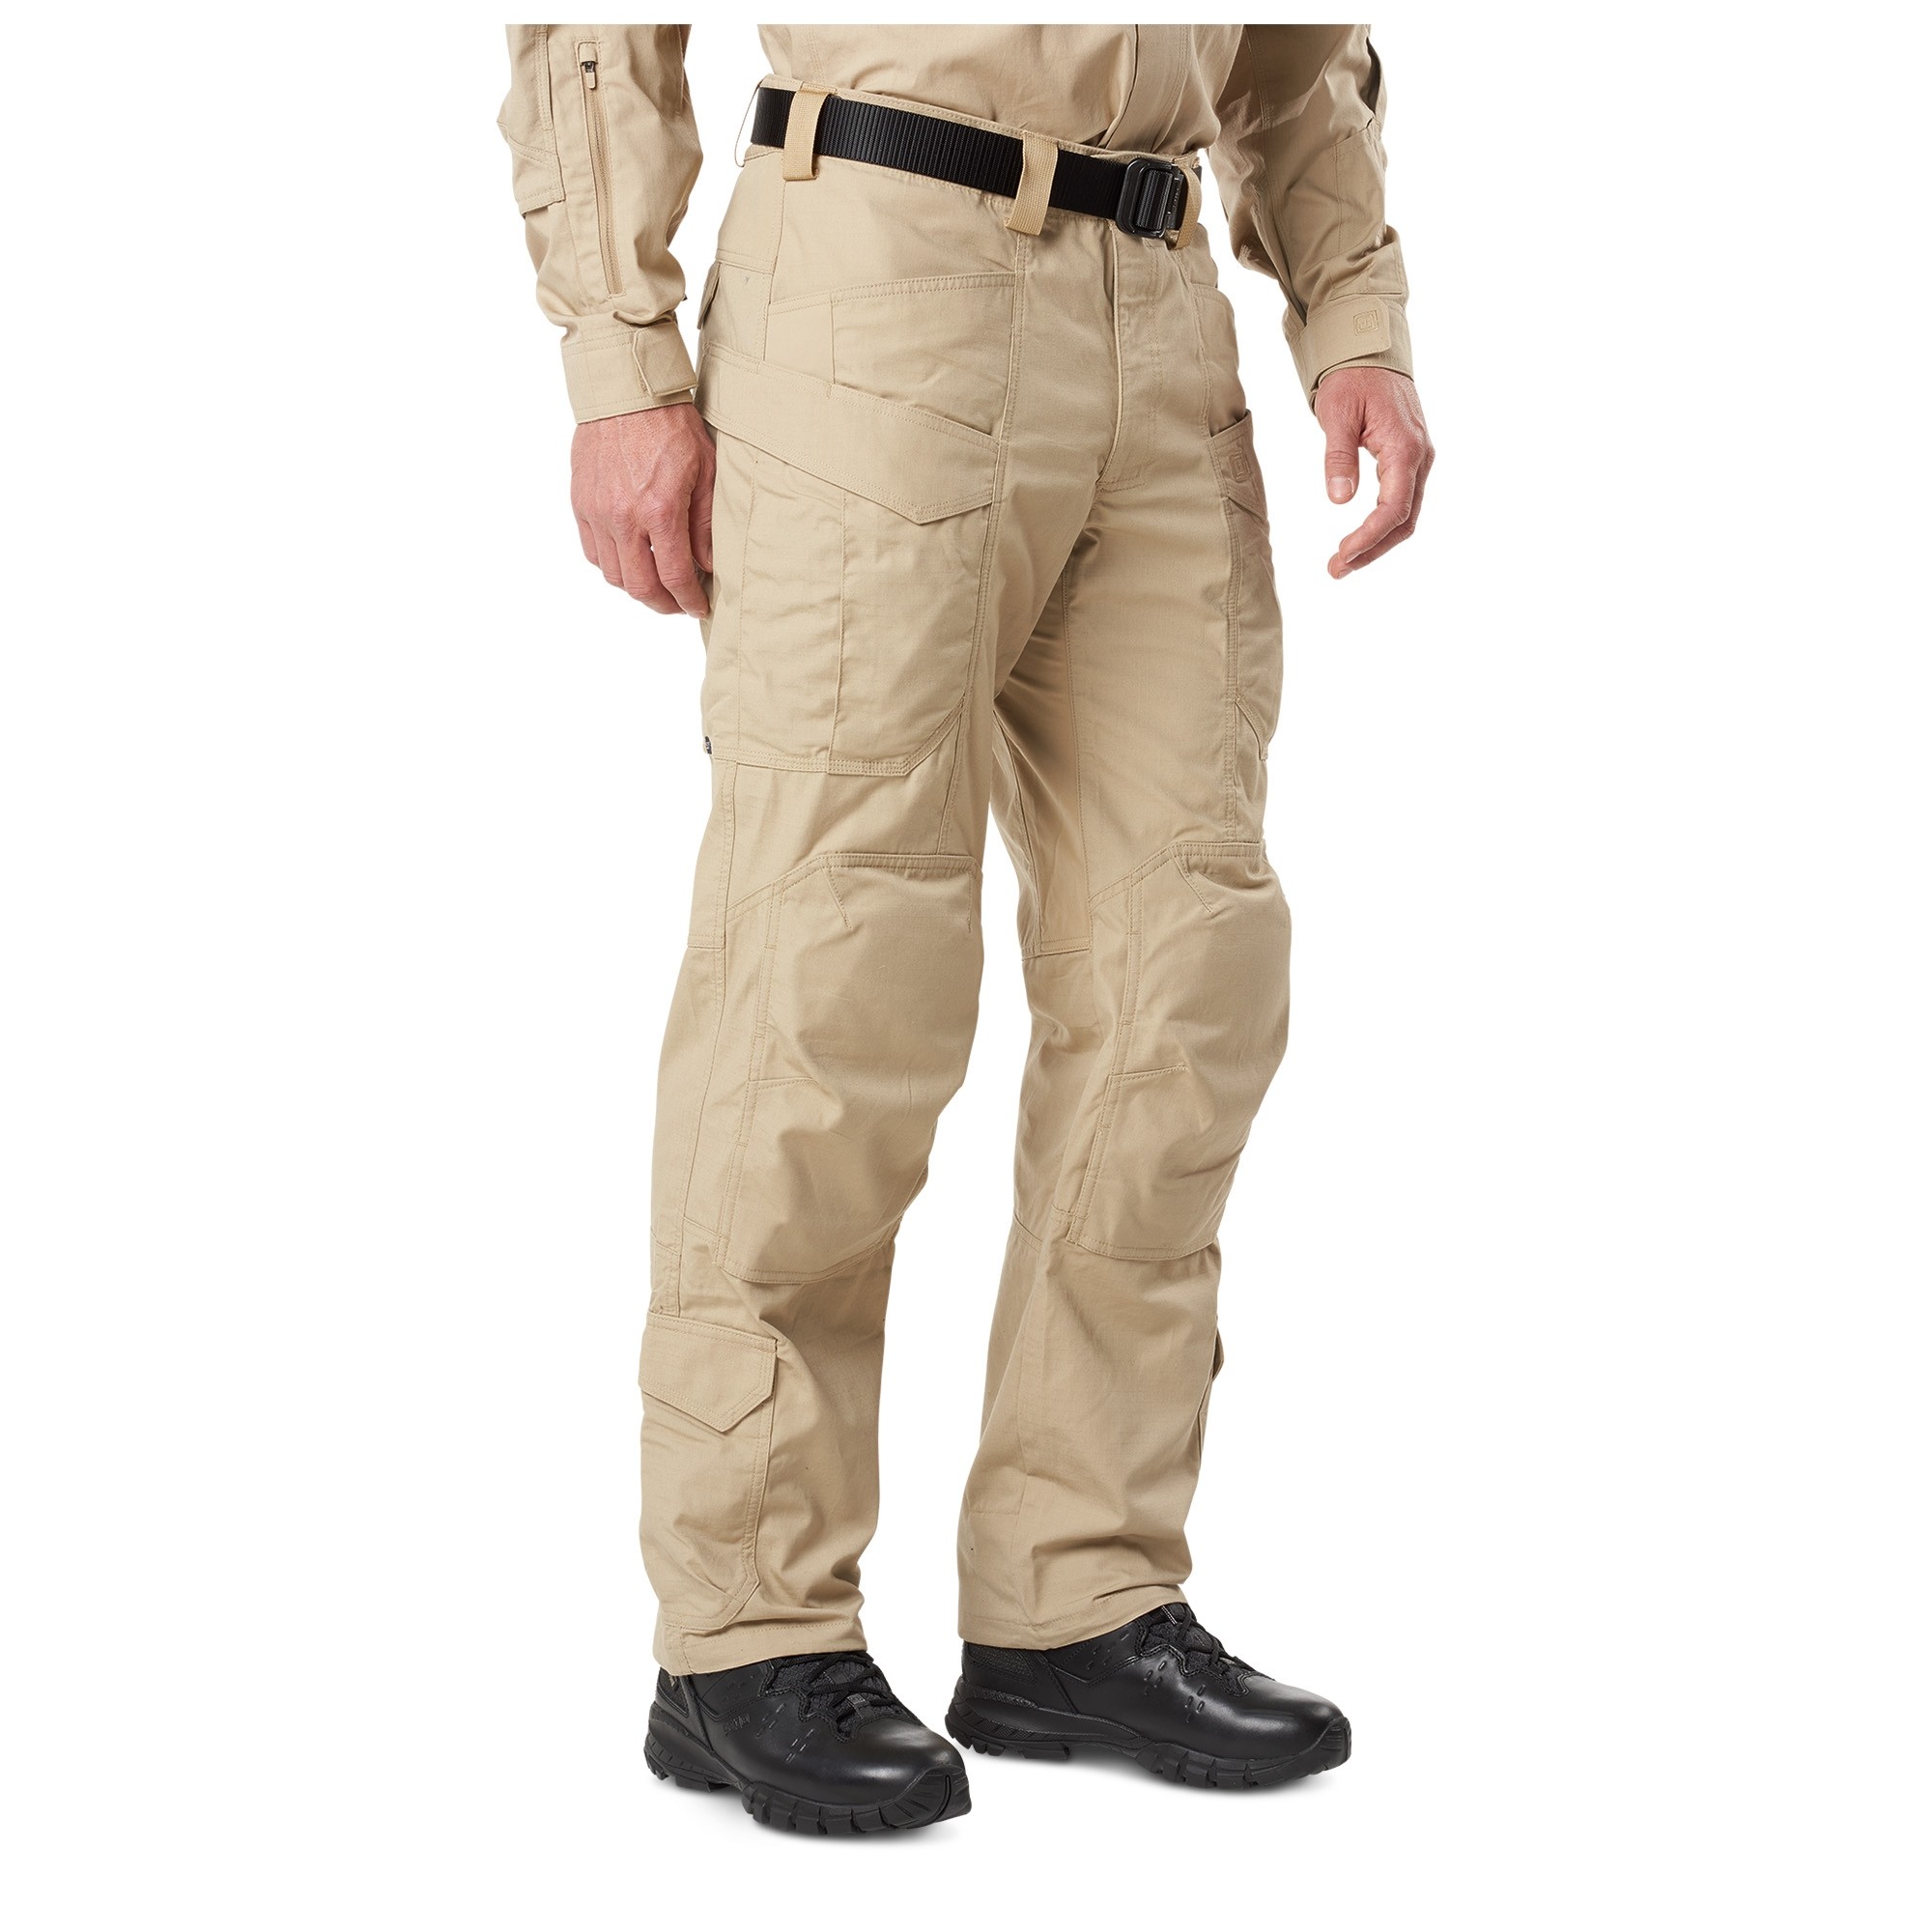 5.11 Tactical Men's XPRT Tactical Pant, Size 30/30 (Cargo Pant)